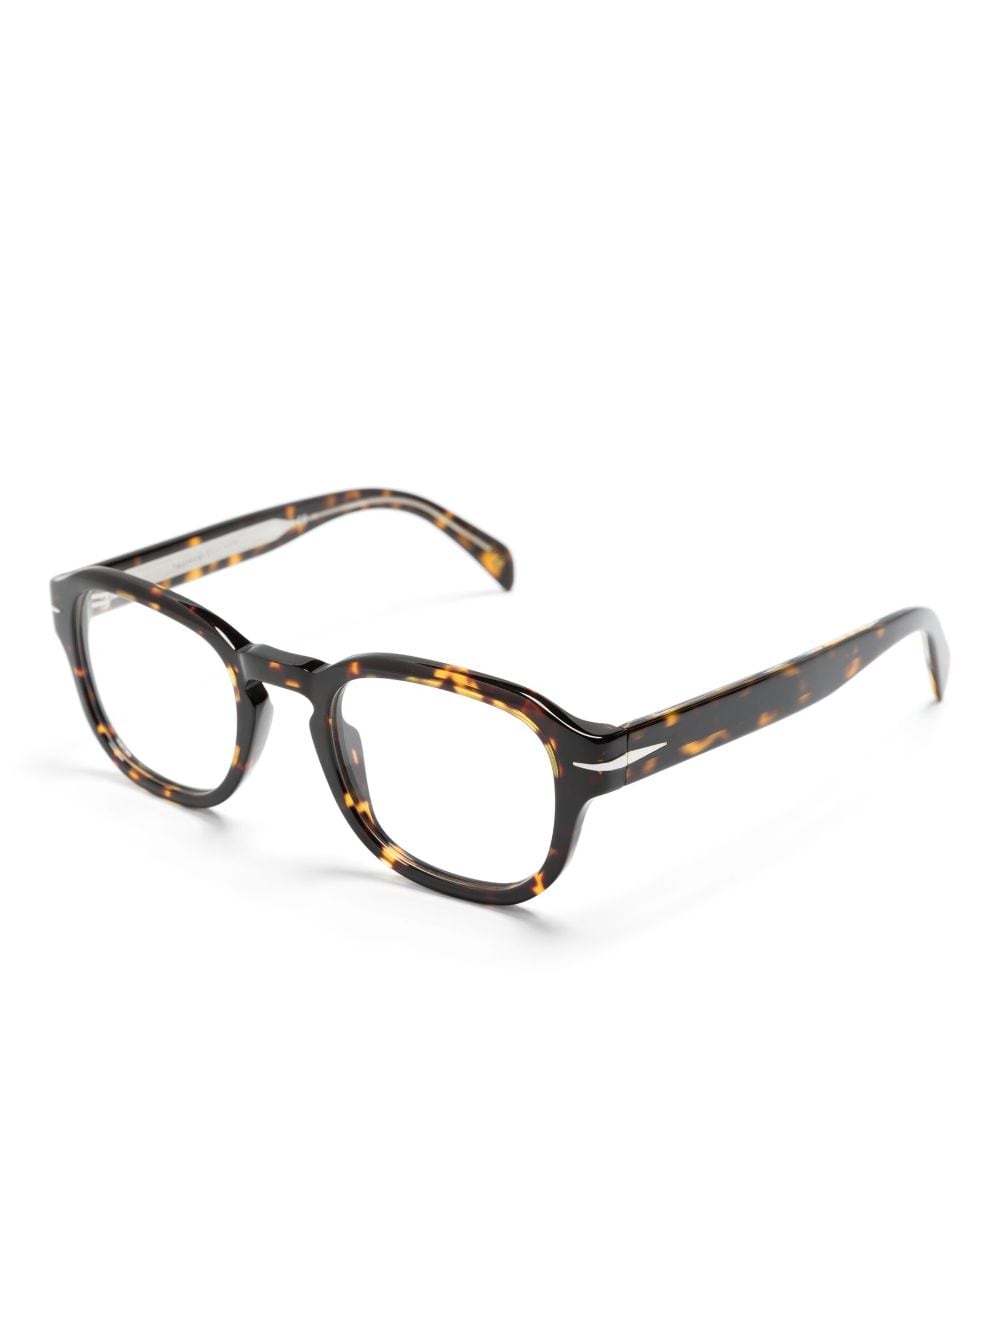 Image 2 of Eyewear by David Beckham очки в круглой оправе черепаховой расцветки